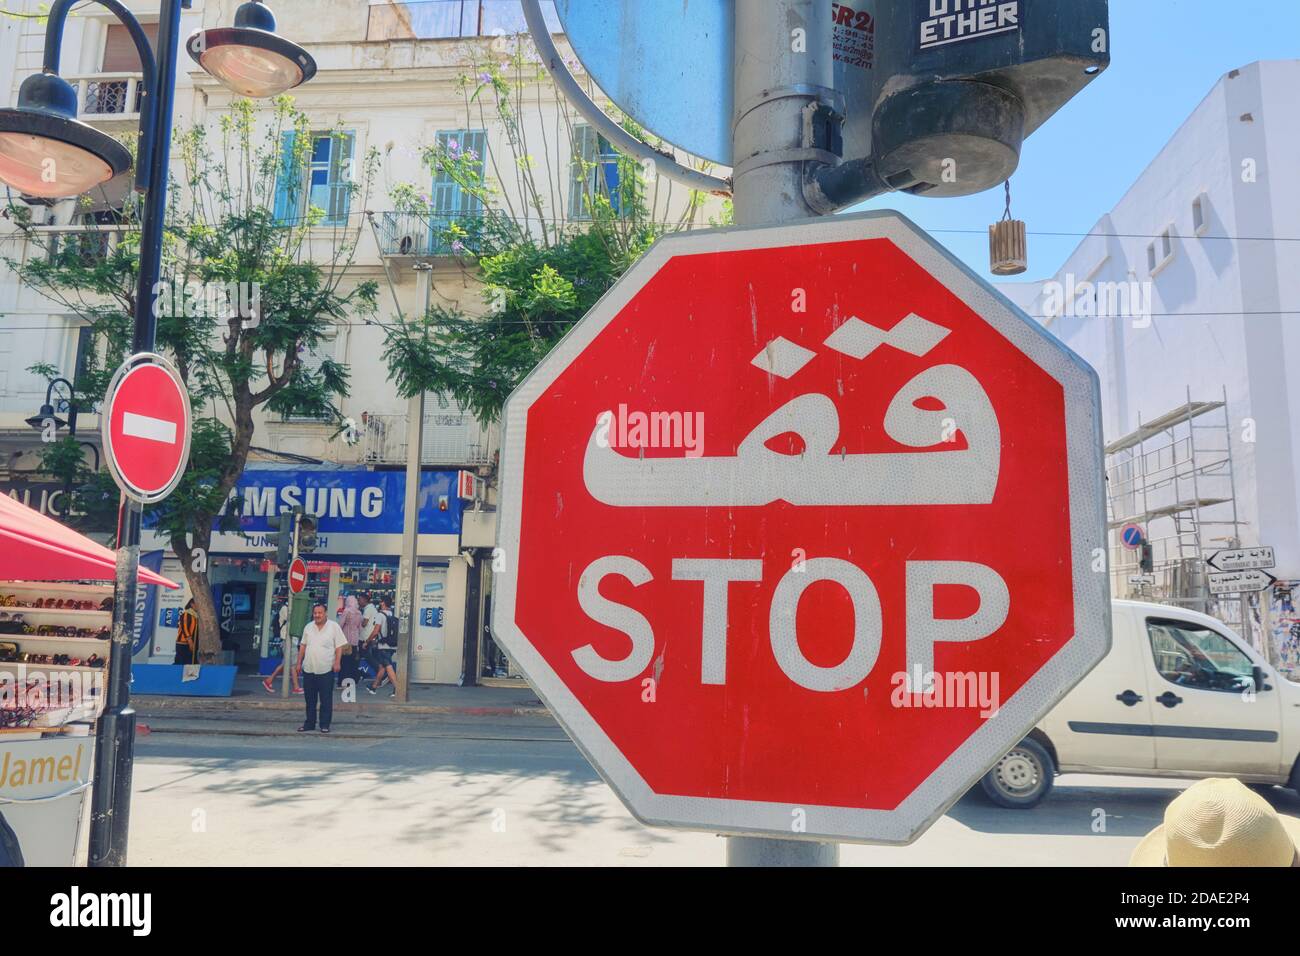 Stop sur la rue du Moyen-Orient avec inscription arabe - Tunis, Tunisie, 06 18 2019 Banque D'Images